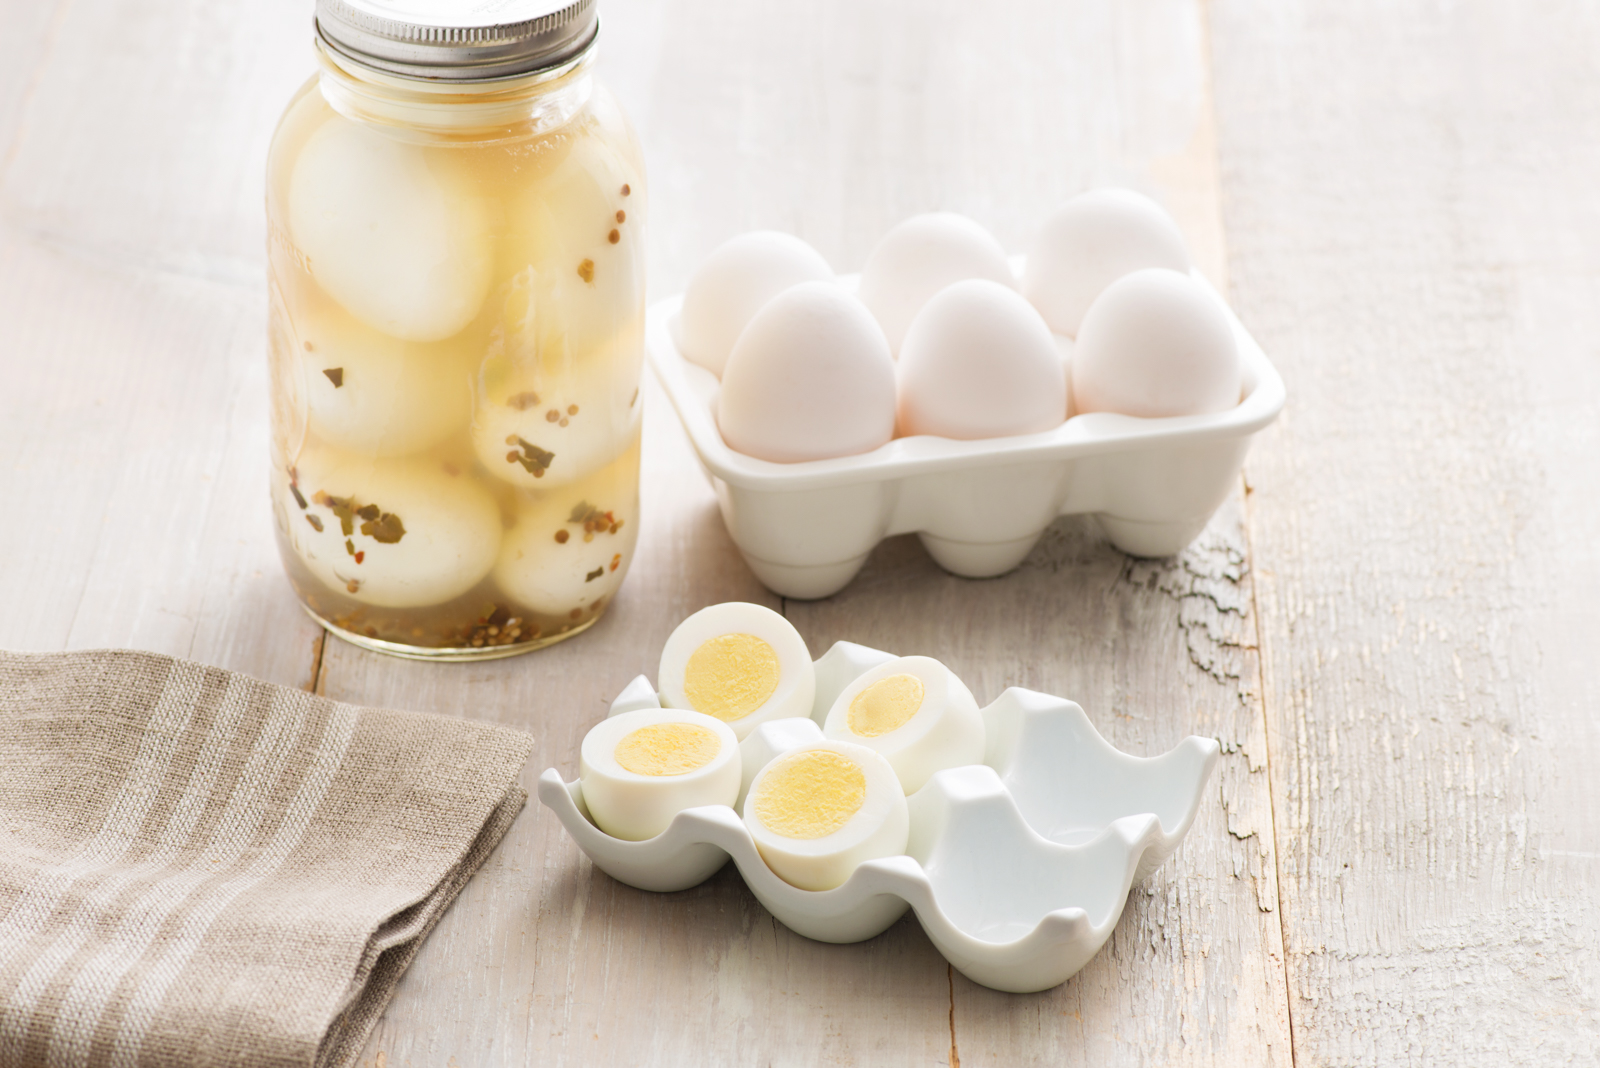 SAINTONG'OEUF - Les œufs près de chez vous